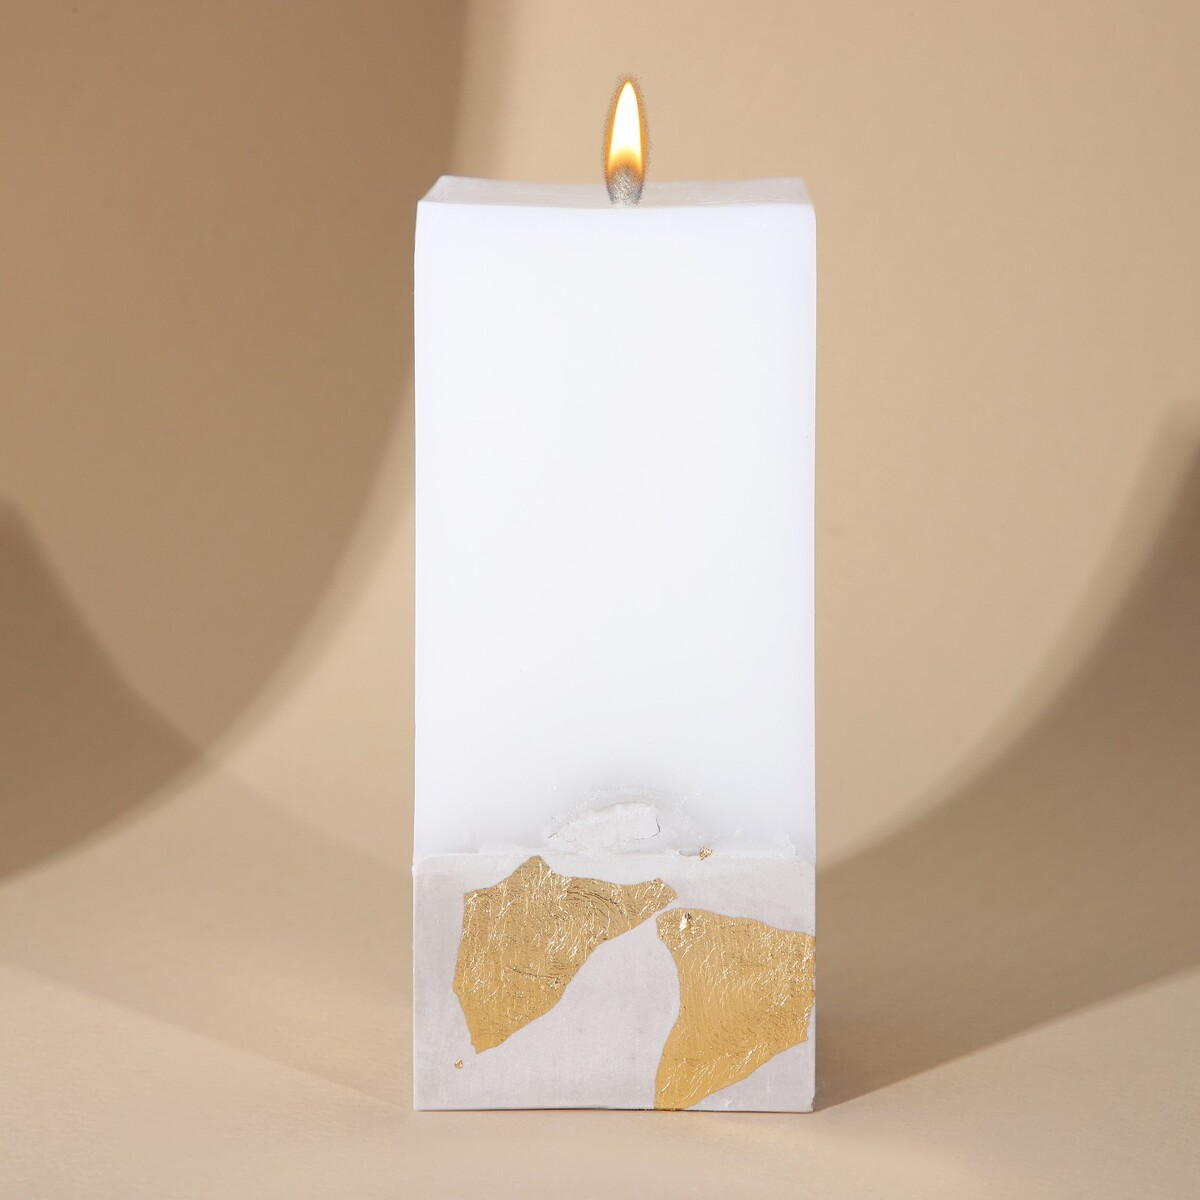 Свеча интерьерная белая с бетоном (поталь), 6 х 6 х 14 см свеча интерьерная белая с бетоном поталь 5 х 5 х17 2 см